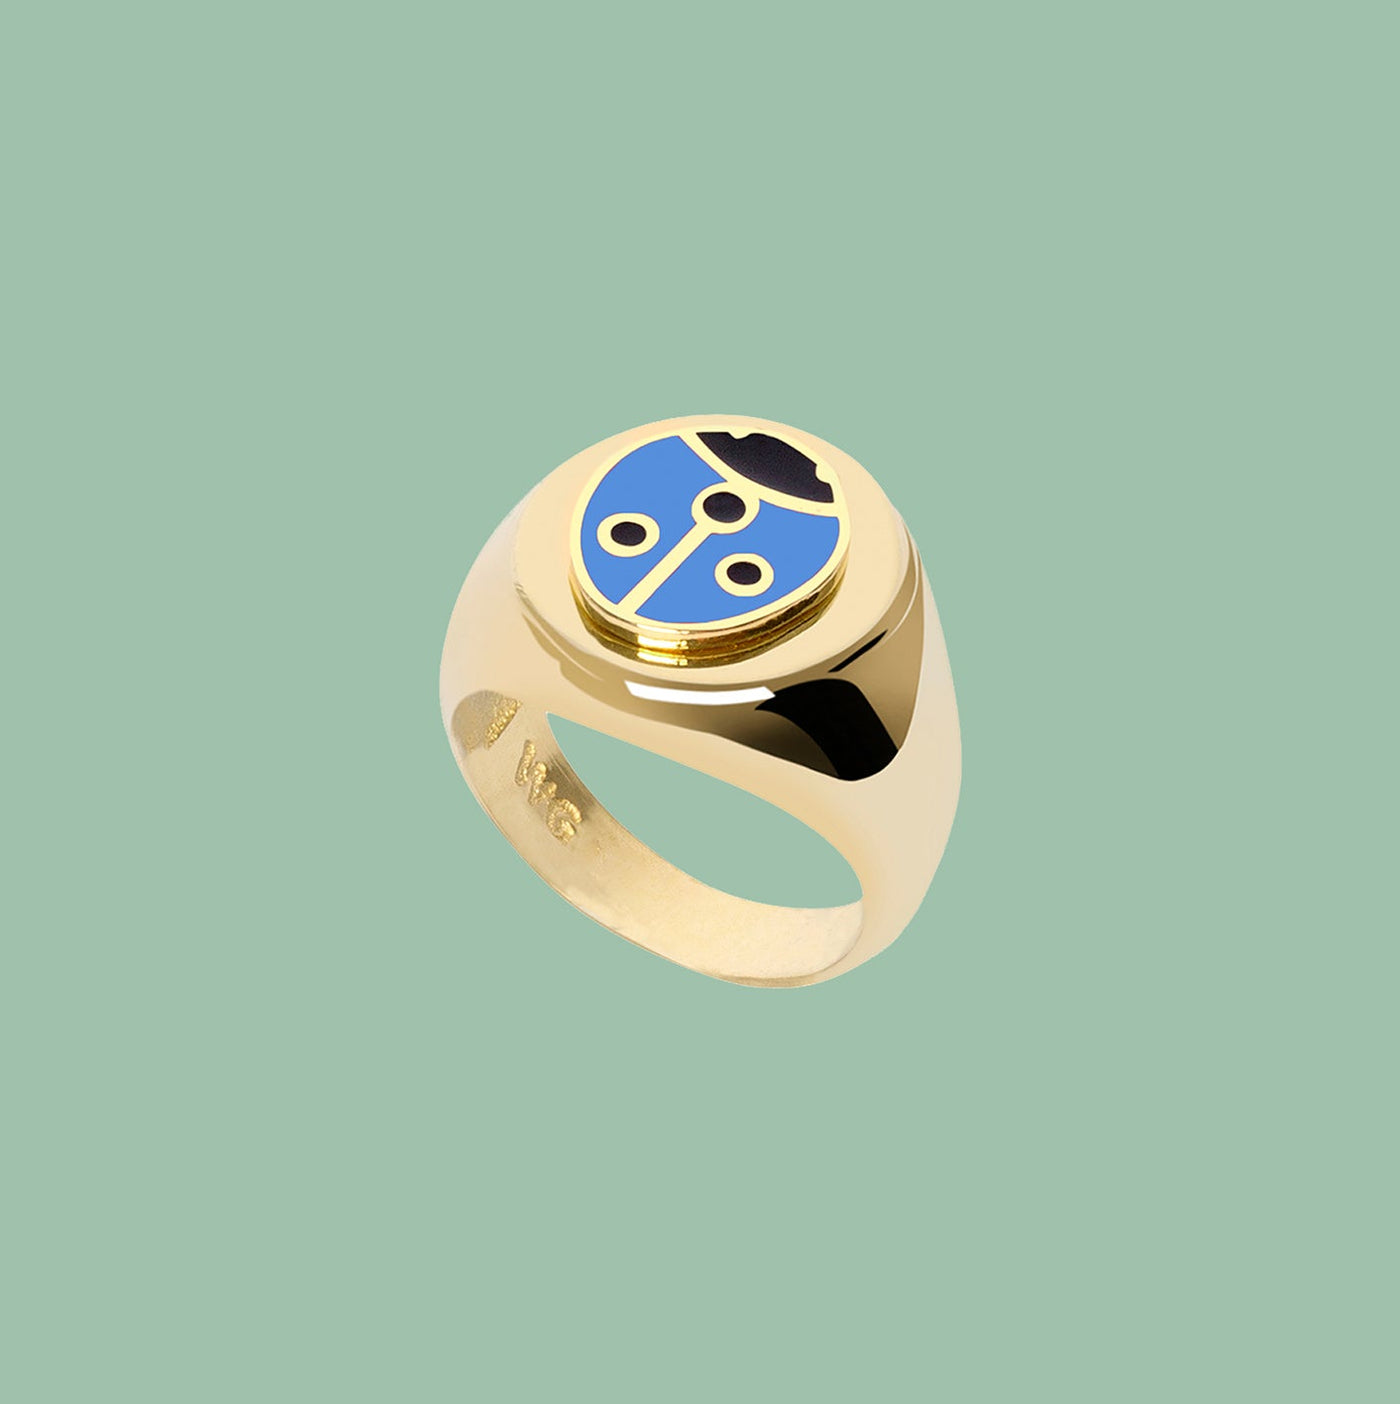 Gold Blue Ladybug Ring